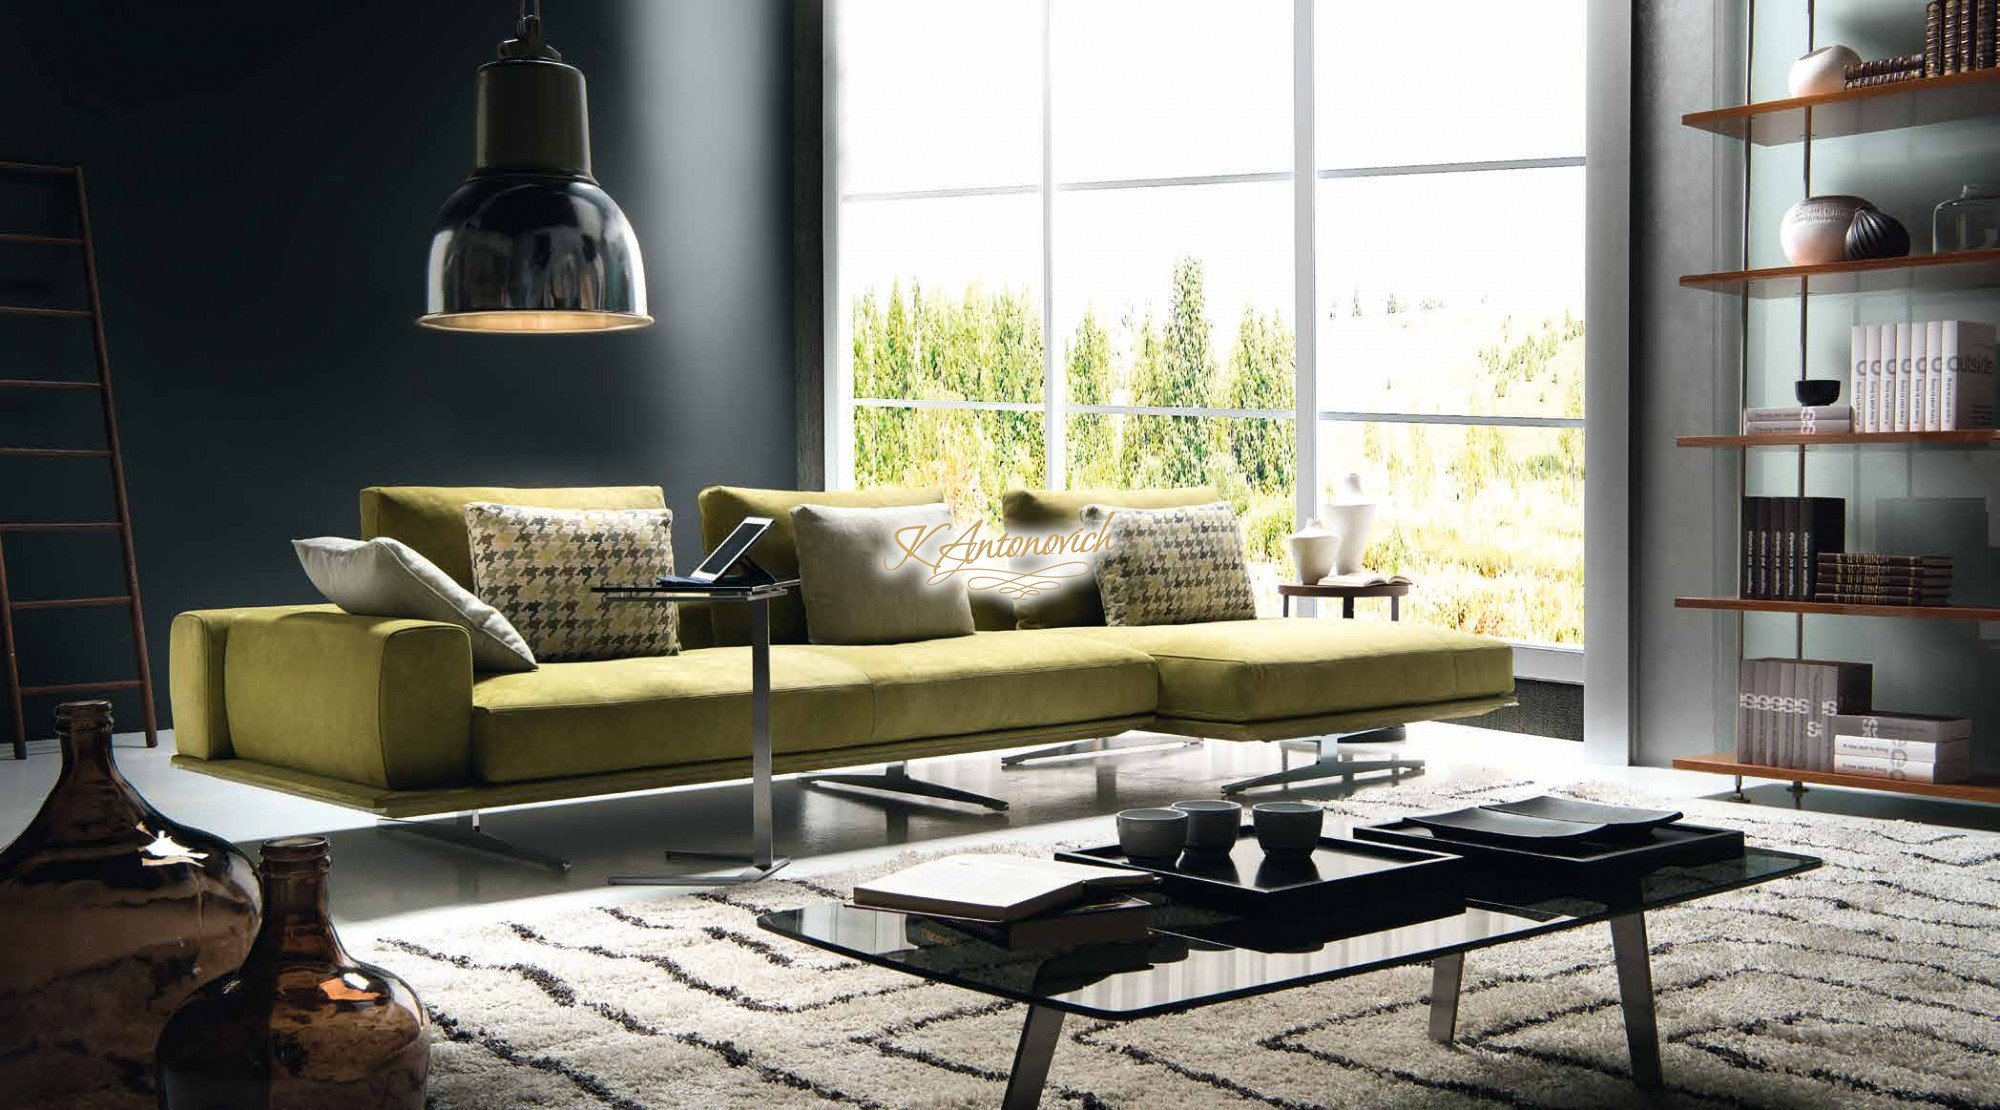 Creatice Italian Living Room Furniture for Simple Design